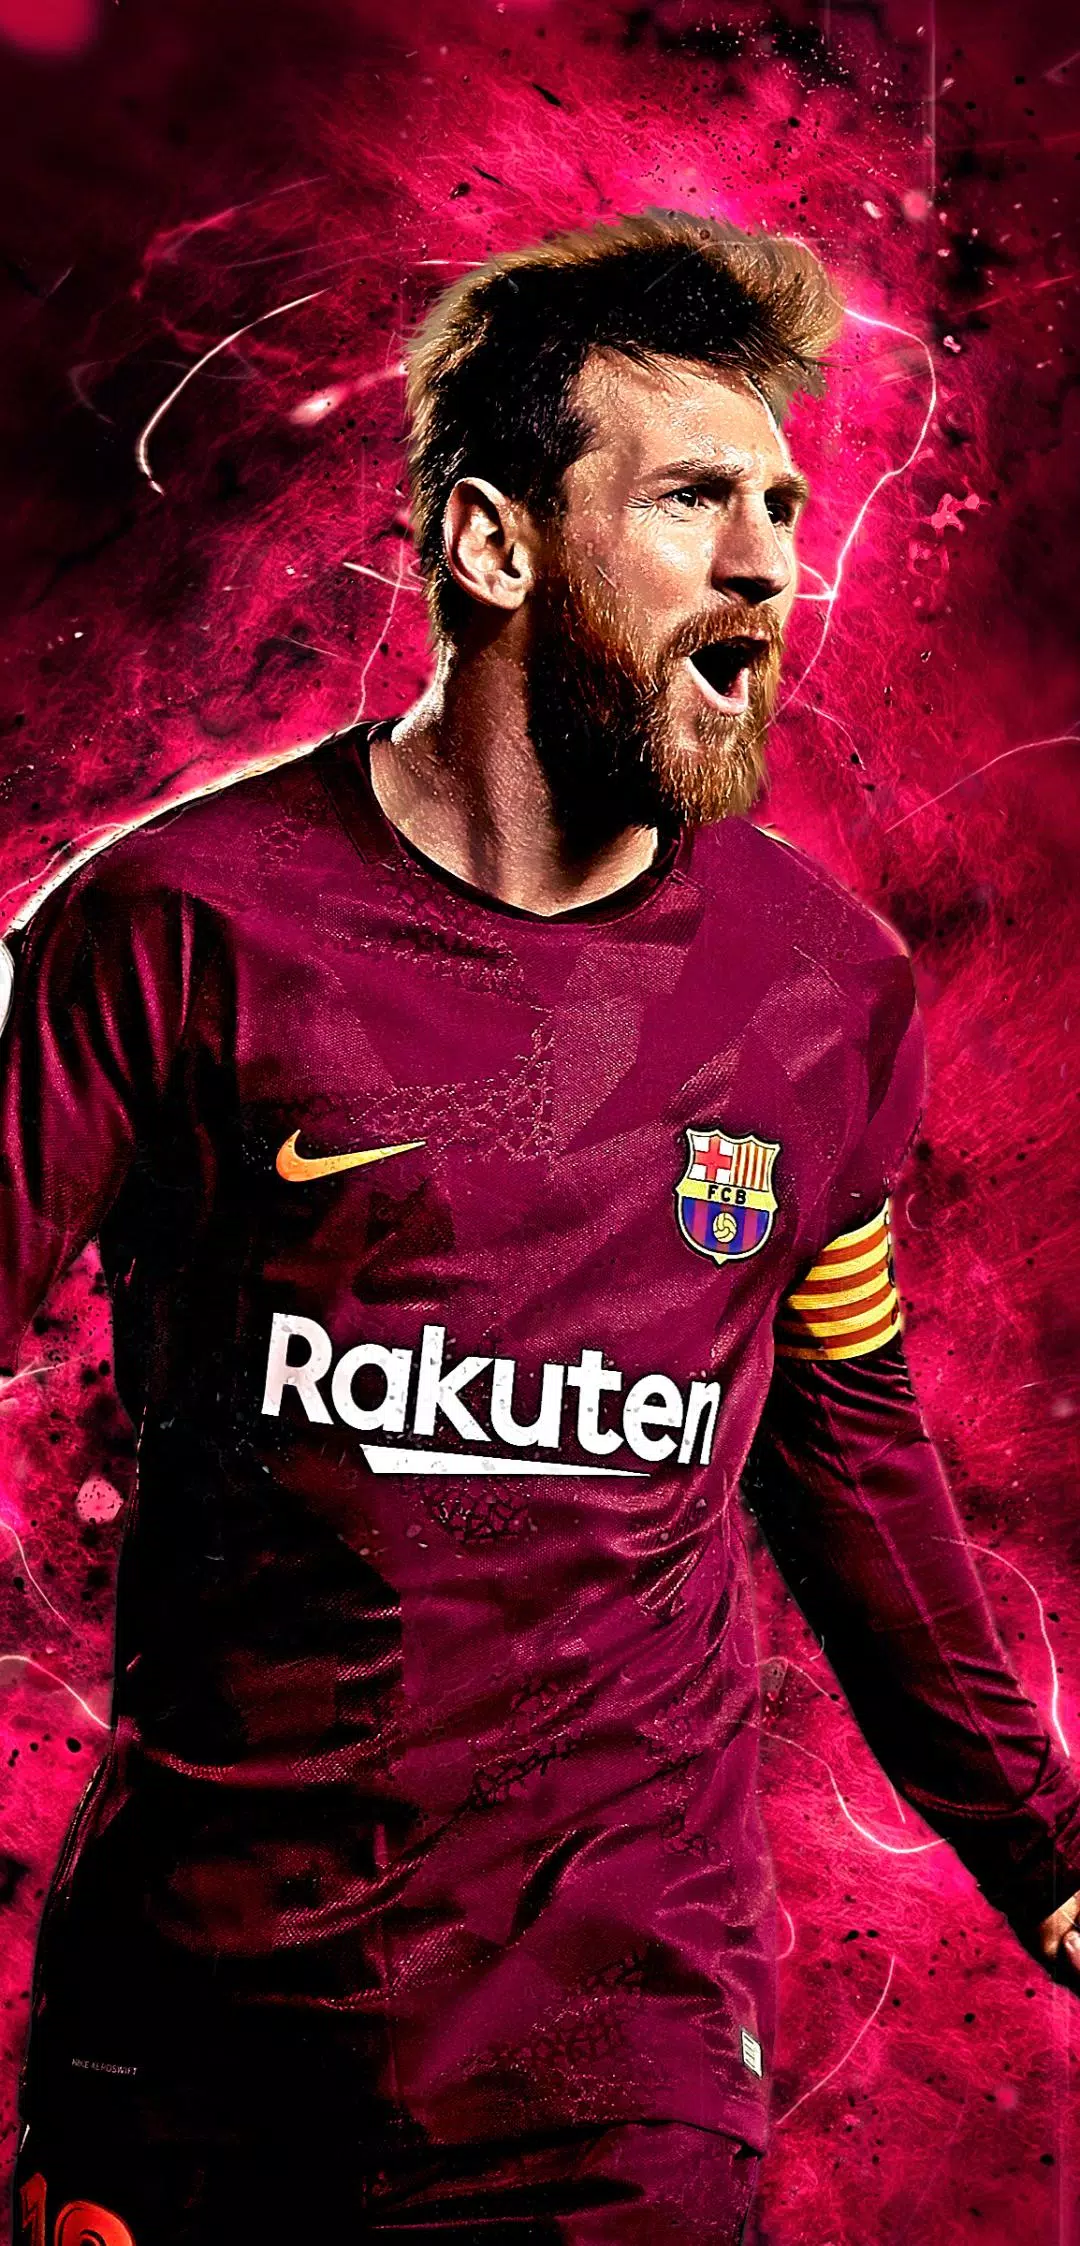 Nếu bạn là người hâm mộ của Lionel Messi và điện thoại của bạn đang chạy hệ điều hành Android, ứng dụng Lionel Messi Wallpaper HD là một lựa chọn tuyệt vời cho bạn! Tải ngay để có những bức ảnh tuyệt đẹp và chất lượng cao về thần tượng của mình.